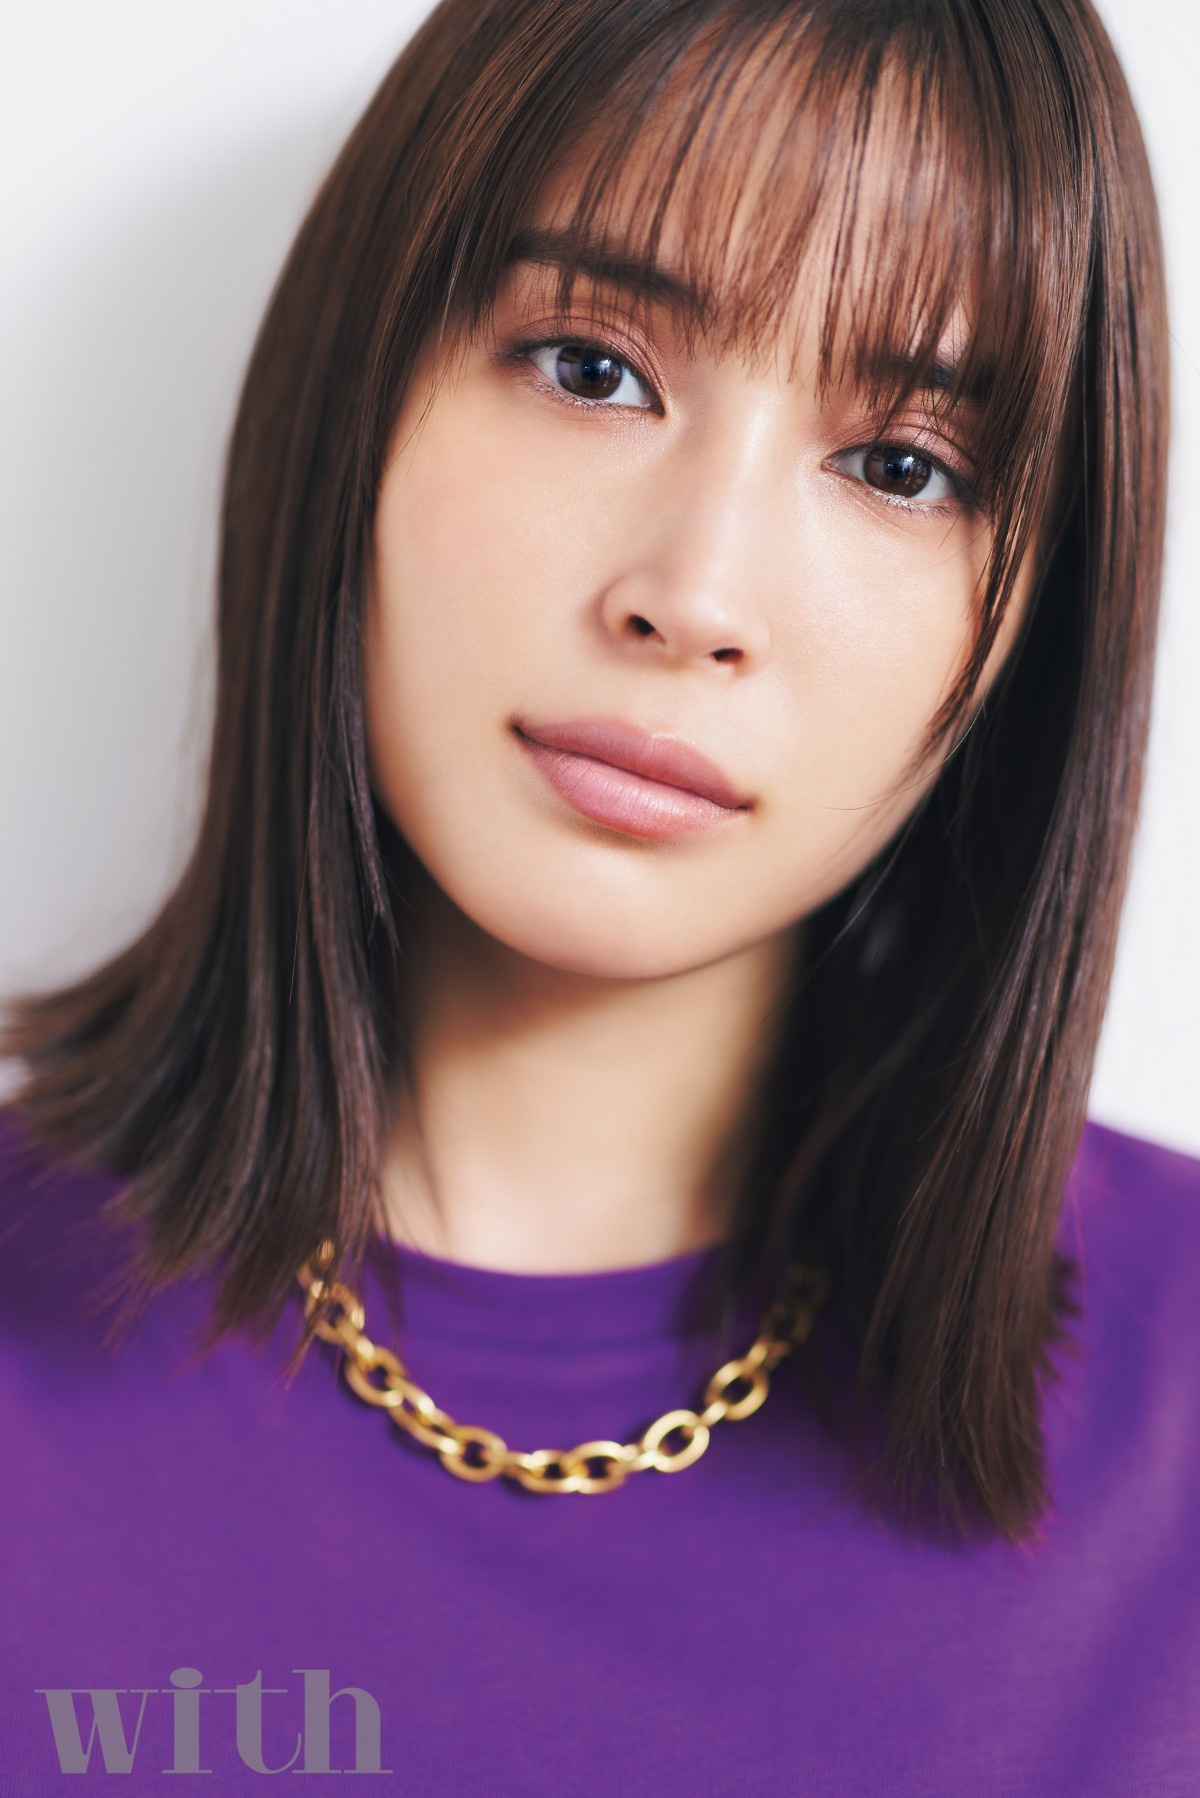 広瀬アリスが語る 可愛い を楽しむためのヒント 小さい頃になりたかった 意外なもの 告白 Oricon News